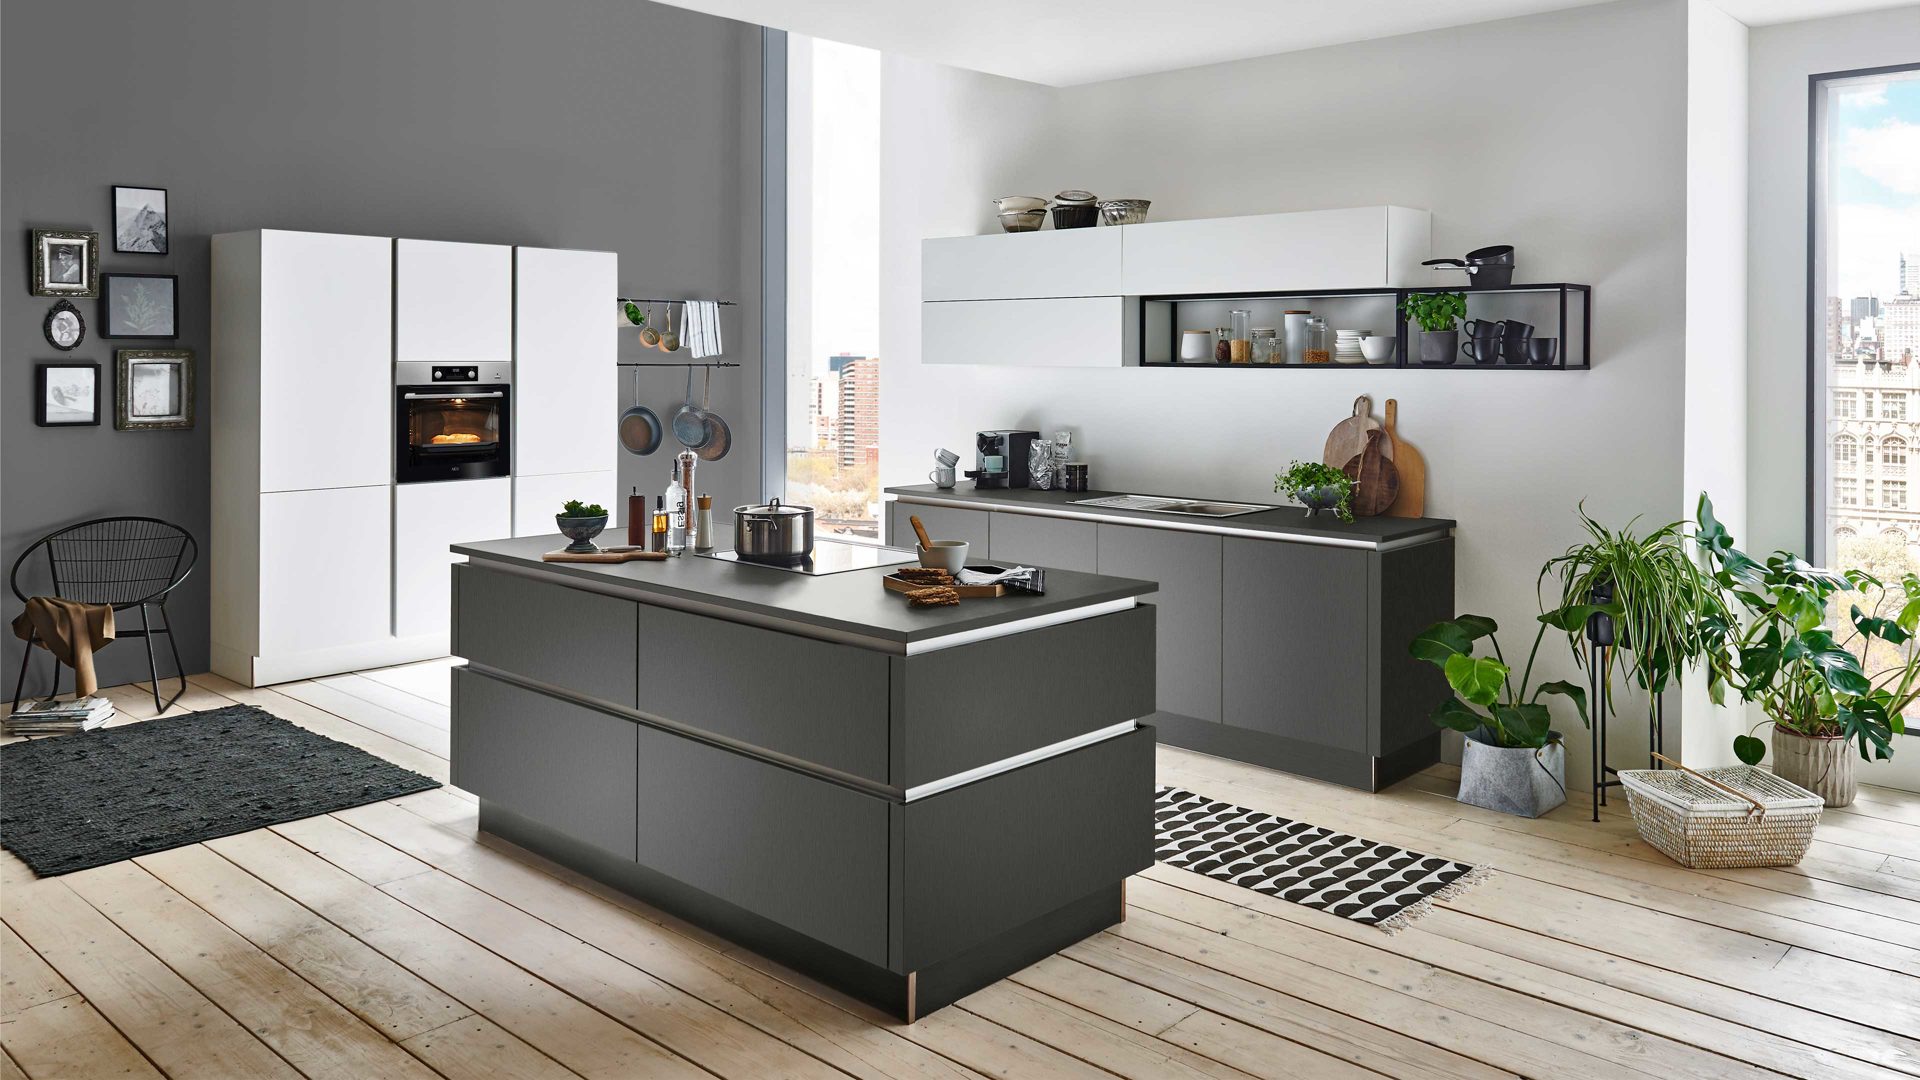 Einbauküche Nolte küchen aus Holz in Grau nolte Einbauküche Titan mit AEG-Einbaugeräten Graphit & Weiß – dreizeilig